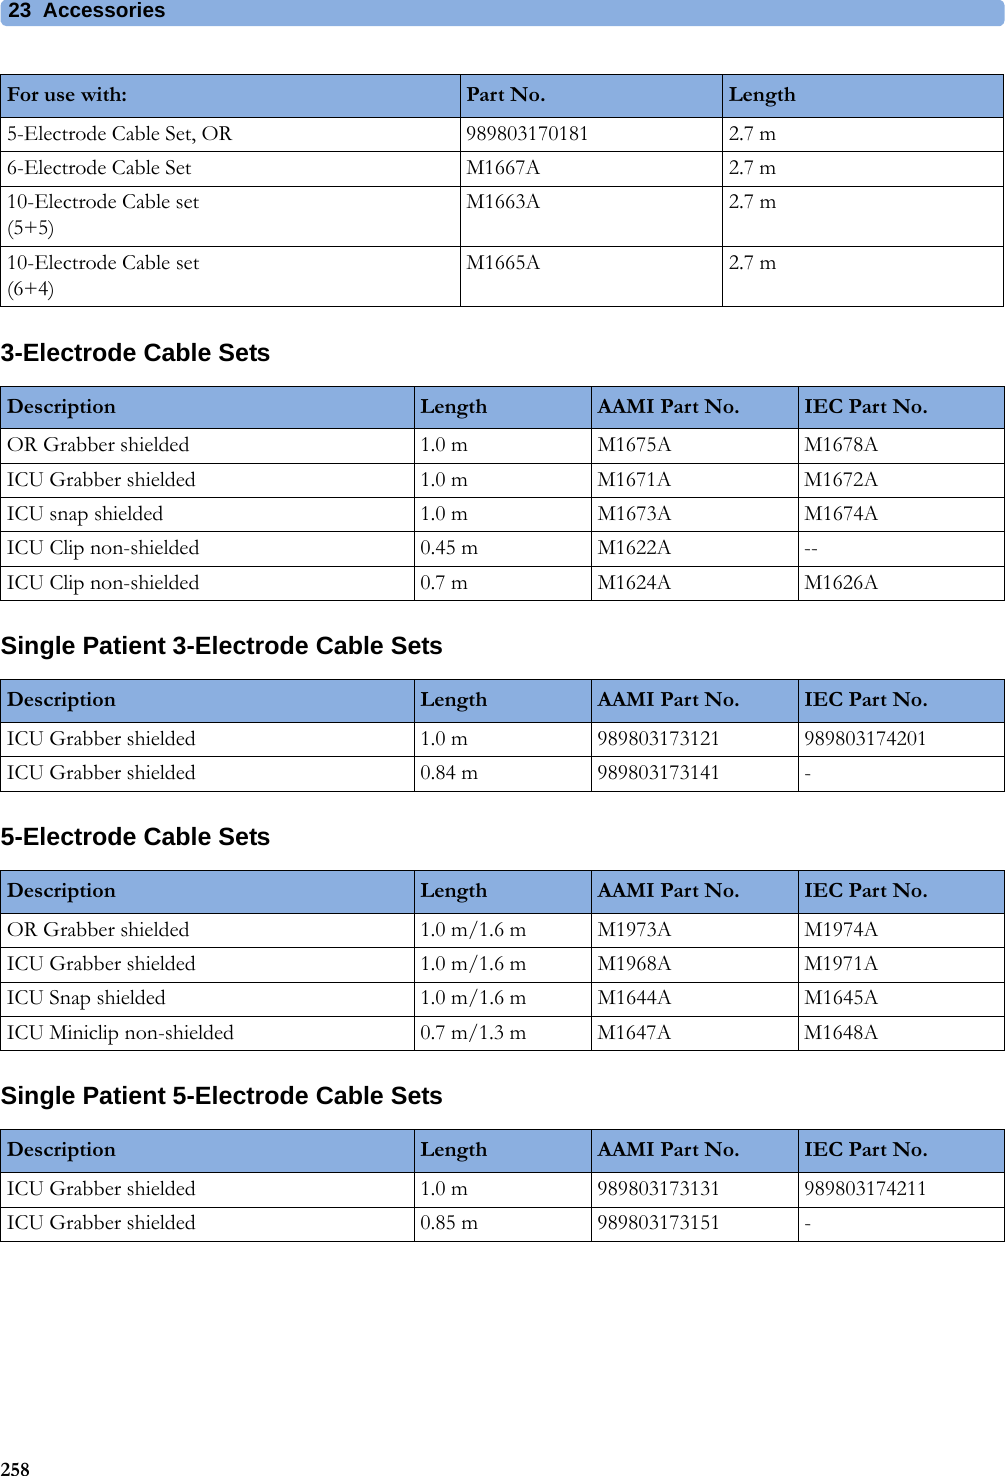 23 Accessories2583-Electrode Cable SetsSingle Patient 3-Electrode Cable Sets5-Electrode Cable SetsSingle Patient 5-Electrode Cable Sets5-Electrode Cable Set, OR 989803170181 2.7 m6-Electrode Cable Set M1667A 2.7 m10-Electrode Cable set(5+5)M1663A 2.7 m10-Electrode Cable set(6+4)M1665A 2.7 mFor use with: Part No. LengthDescription Length AAMI Part No. IEC Part No.OR Grabber shielded 1.0 m M1675A M1678AICU Grabber shielded 1.0 m M1671A M1672AICU snap shielded 1.0 m M1673A M1674AICU Clip non-shielded 0.45 m M1622A --ICU Clip non-shielded 0.7 m M1624A M1626ADescription Length AAMI Part No. IEC Part No.ICU Grabber shielded 1.0 m 989803173121 989803174201ICU Grabber shielded 0.84 m 989803173141 -Description Length AAMI Part No. IEC Part No.OR Grabber shielded 1.0 m/1.6 m M1973A M1974AICU Grabber shielded 1.0 m/1.6 m M1968A M1971AICU Snap shielded 1.0 m/1.6 m M1644A M1645AICU Miniclip non-shielded 0.7 m/1.3 m M1647A M1648ADescription Length AAMI Part No. IEC Part No.ICU Grabber shielded 1.0 m 989803173131 989803174211ICU Grabber shielded 0.85 m 989803173151 -